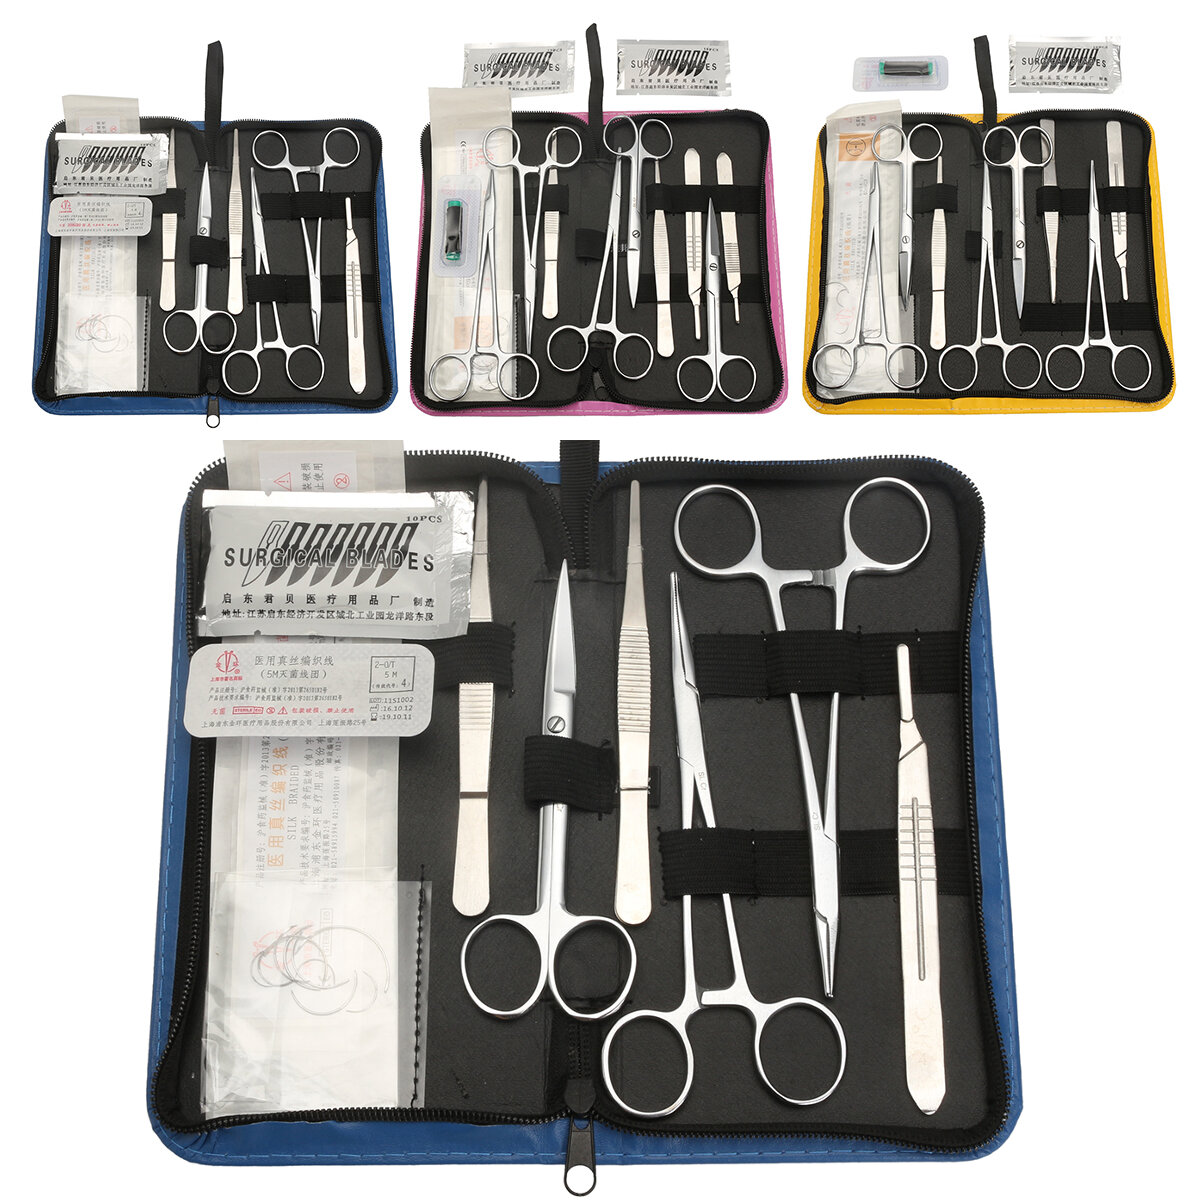 Kit de pratique de suture comprenant un pack de cours de suture professionnellement développé et un sac à outils.